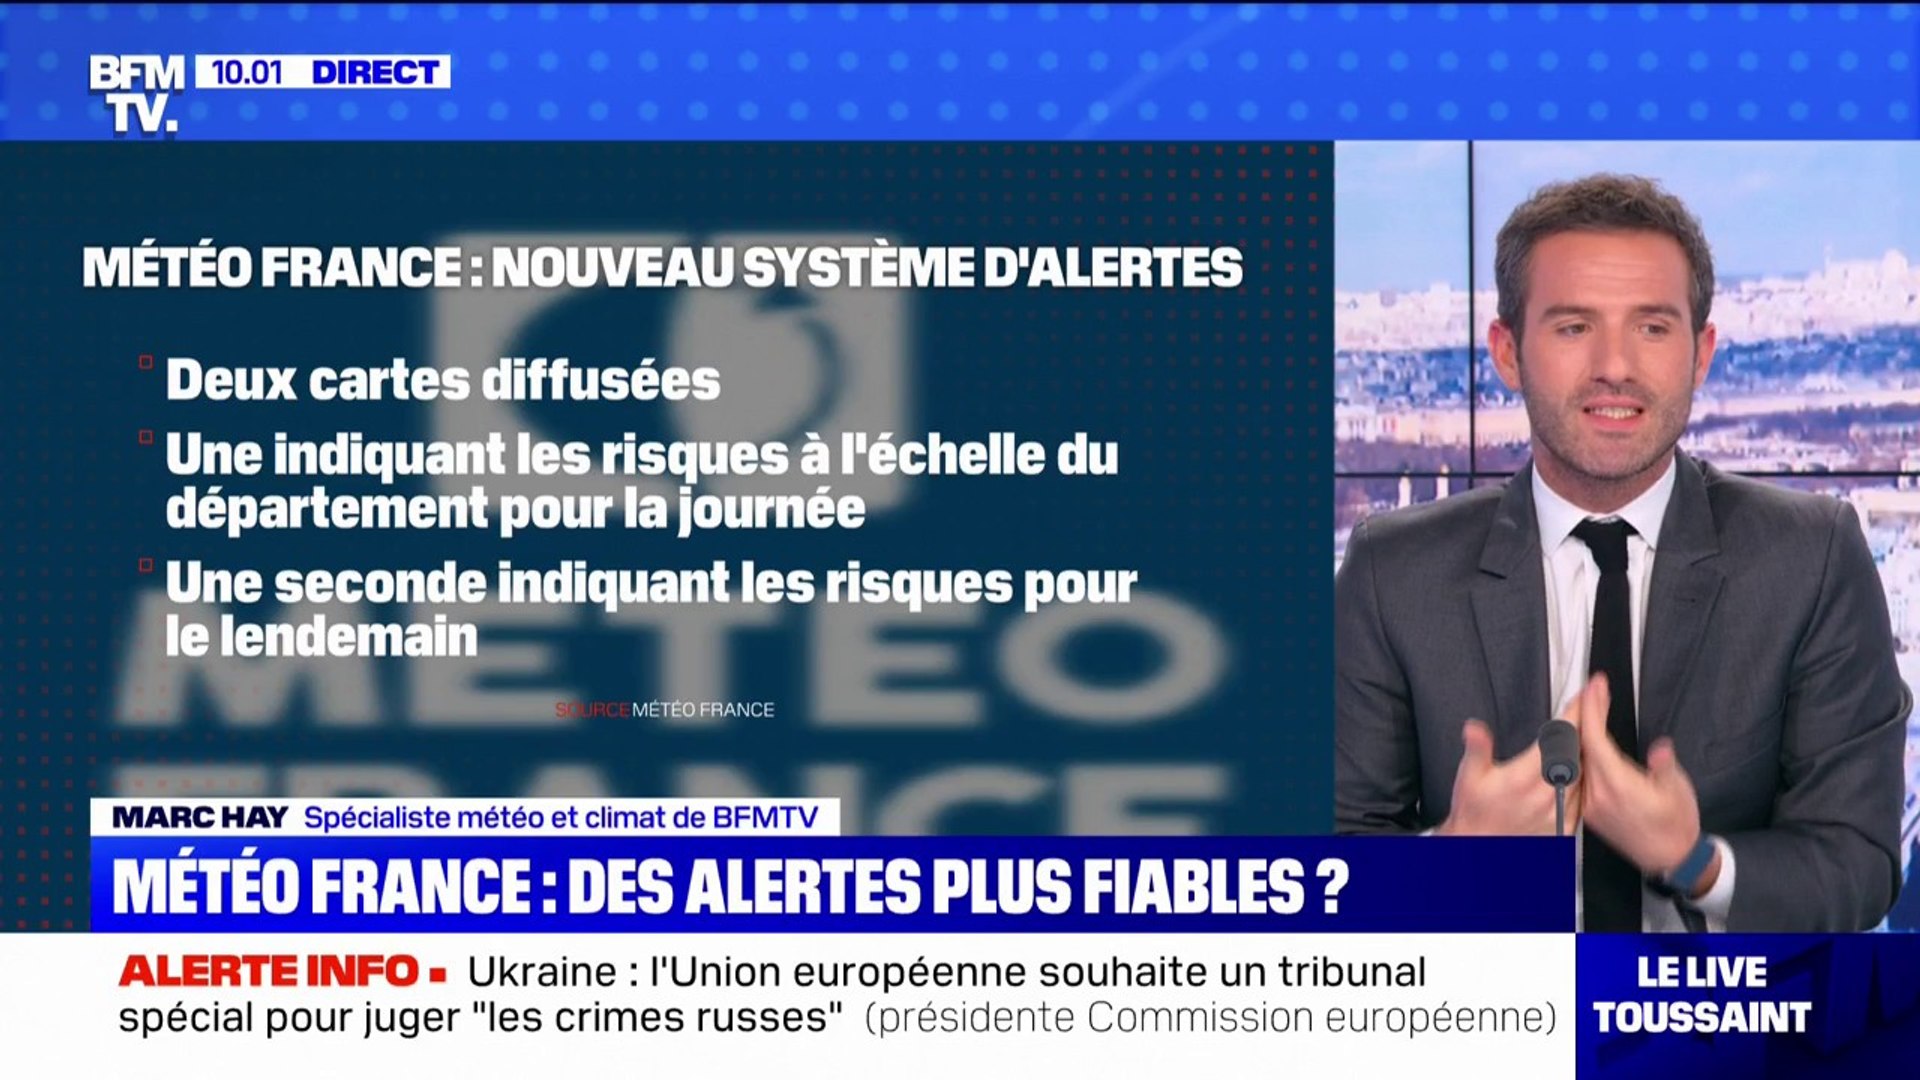 Météo France: bientôt des alertes plus fiables? - Vidéo Dailymotion